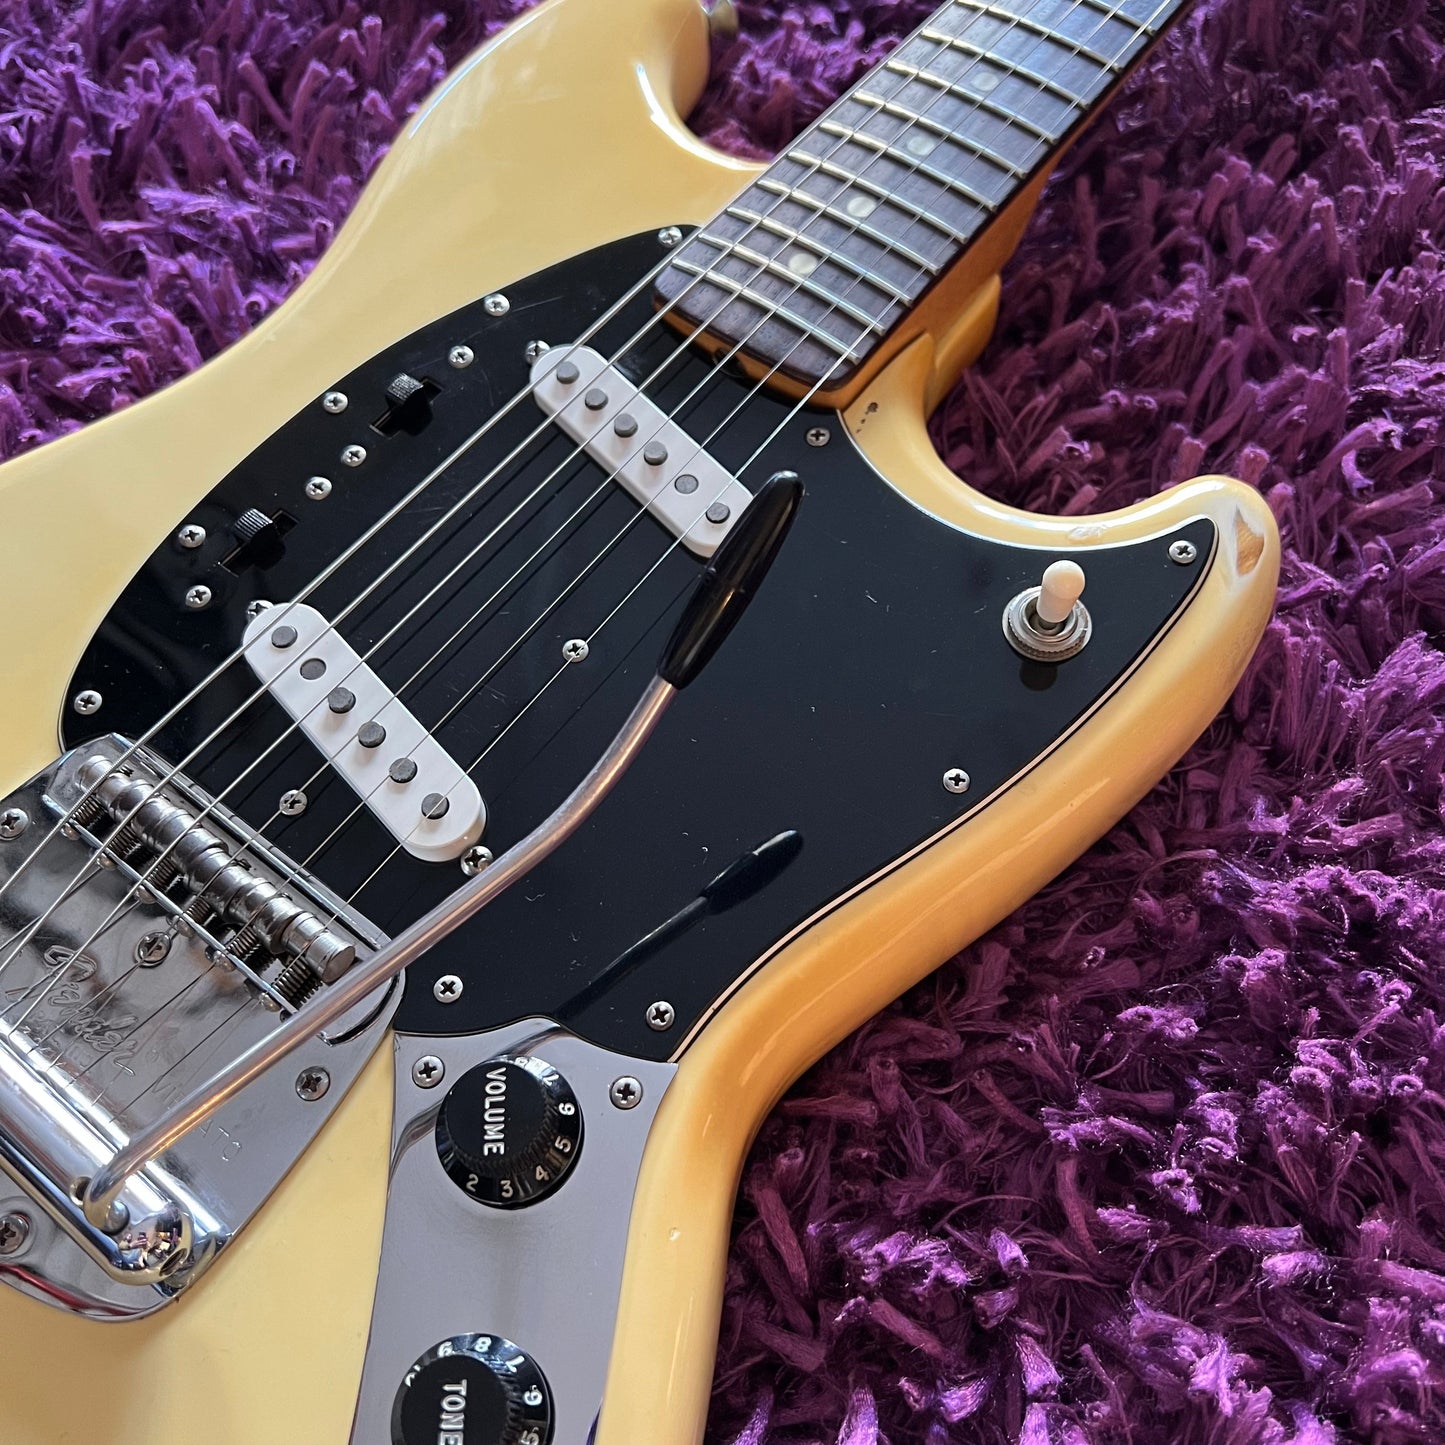 1977 Fender Mustang Olympic White (Fullerton CBS Era) (w/ OHSC)